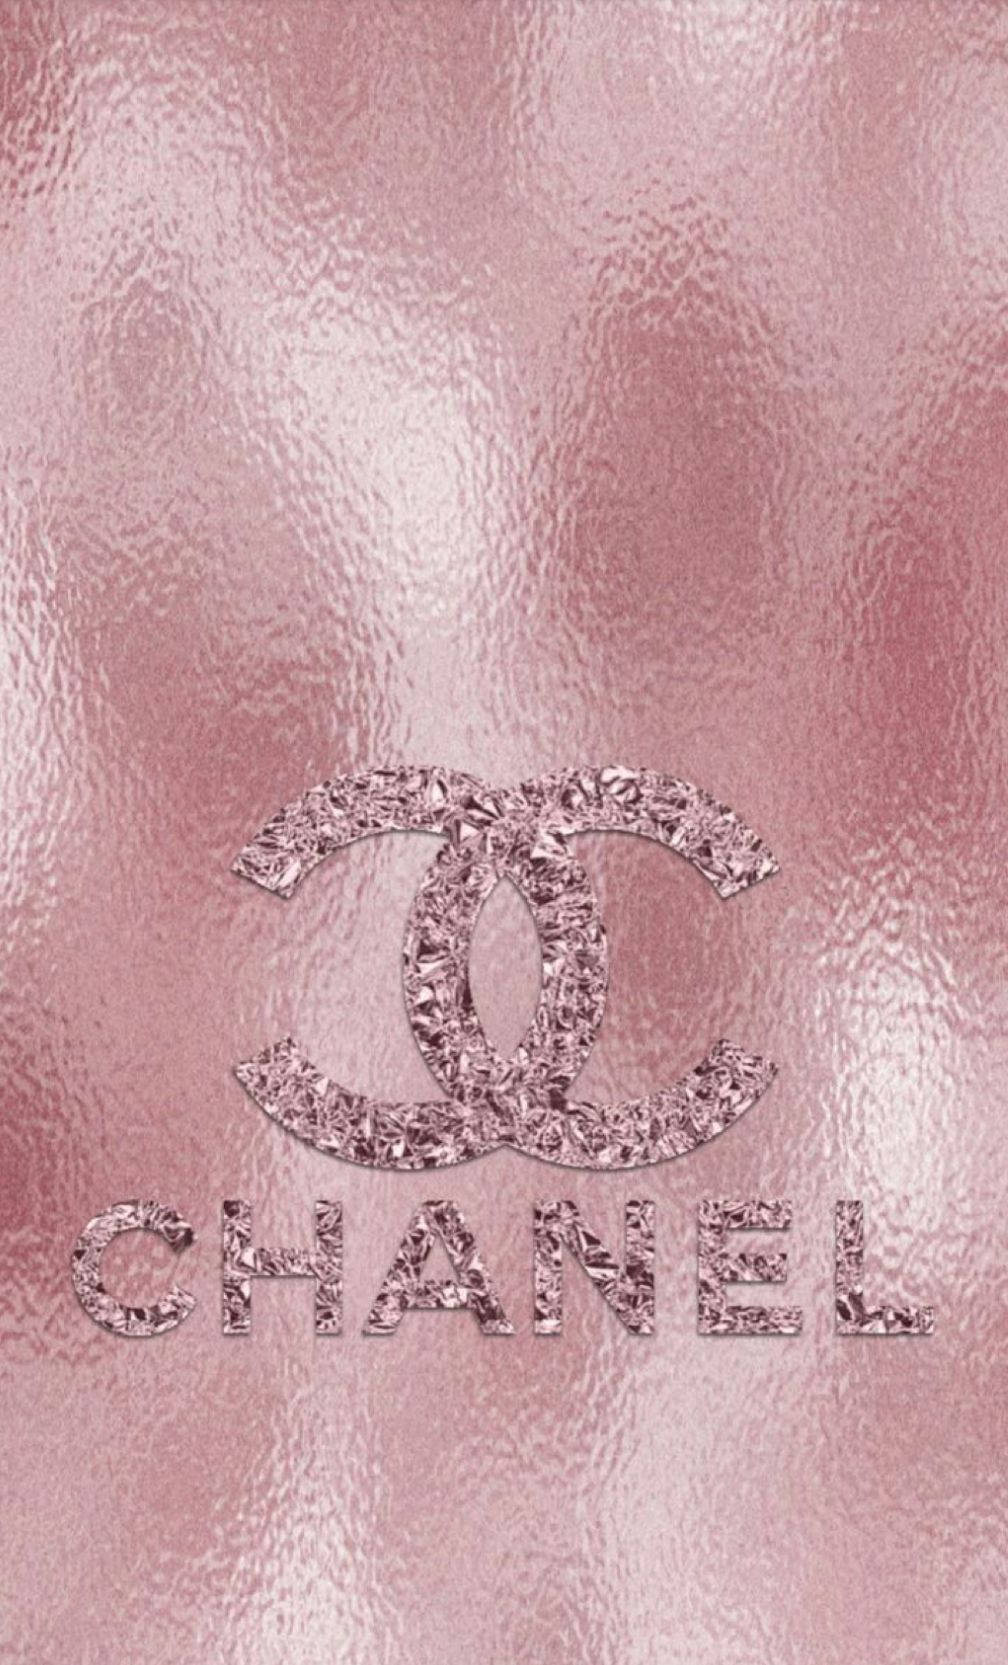 Chanellogo Auf Rosa Hintergrund Wallpaper